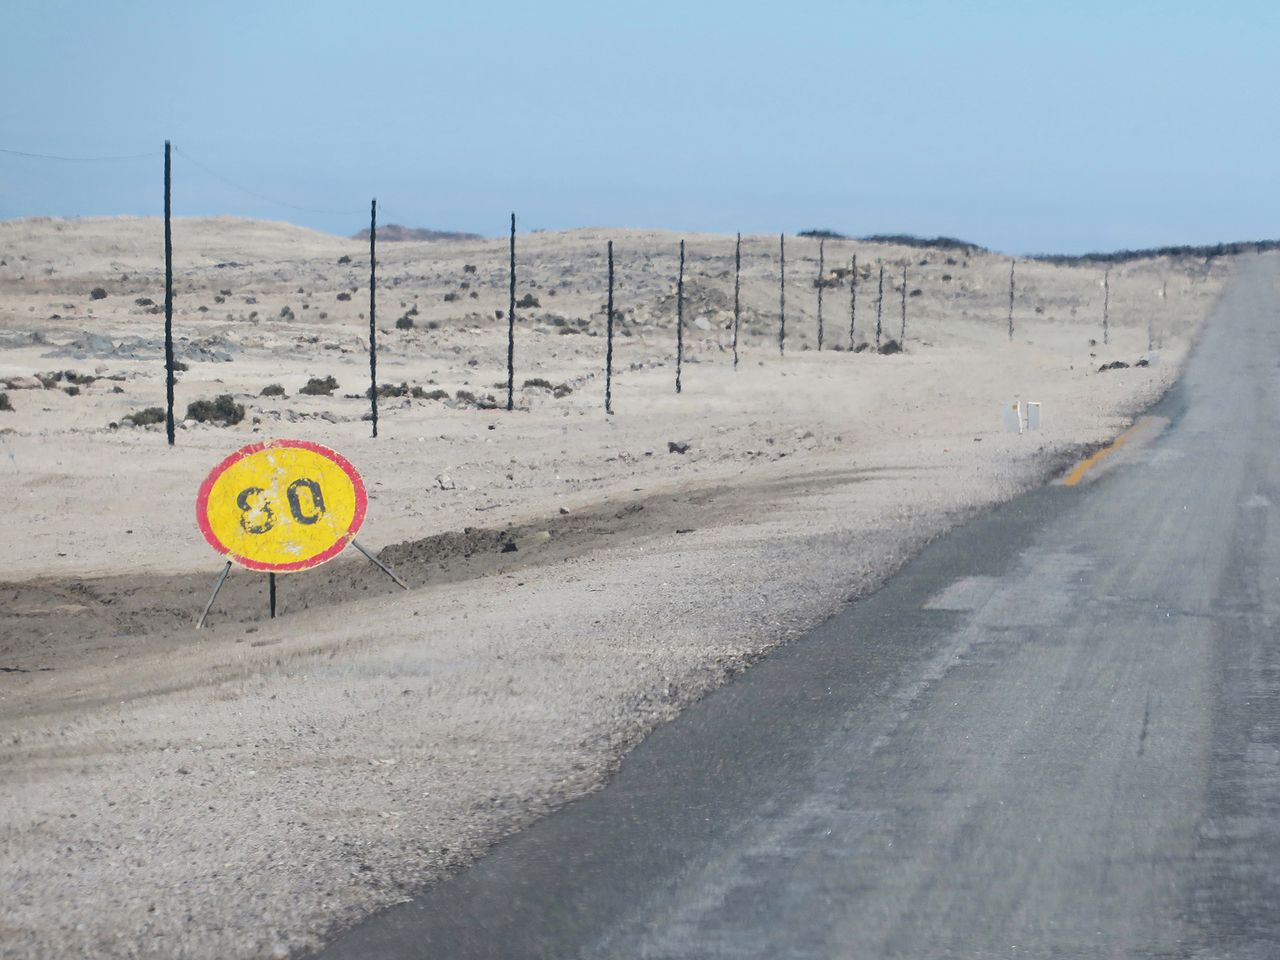 Podobnie do nieoczekiwanych pustelników, znaki stały przy zakurzonych drogach - nieruchome, dyskretne i oświetlone ostrym słońcem pustyni. Samochód, który je mijał był prawdopodobnie jedynym gościem, jakiego widziały od dawna na tym pustkowiu - opowiada o swoim projekcie autorka.